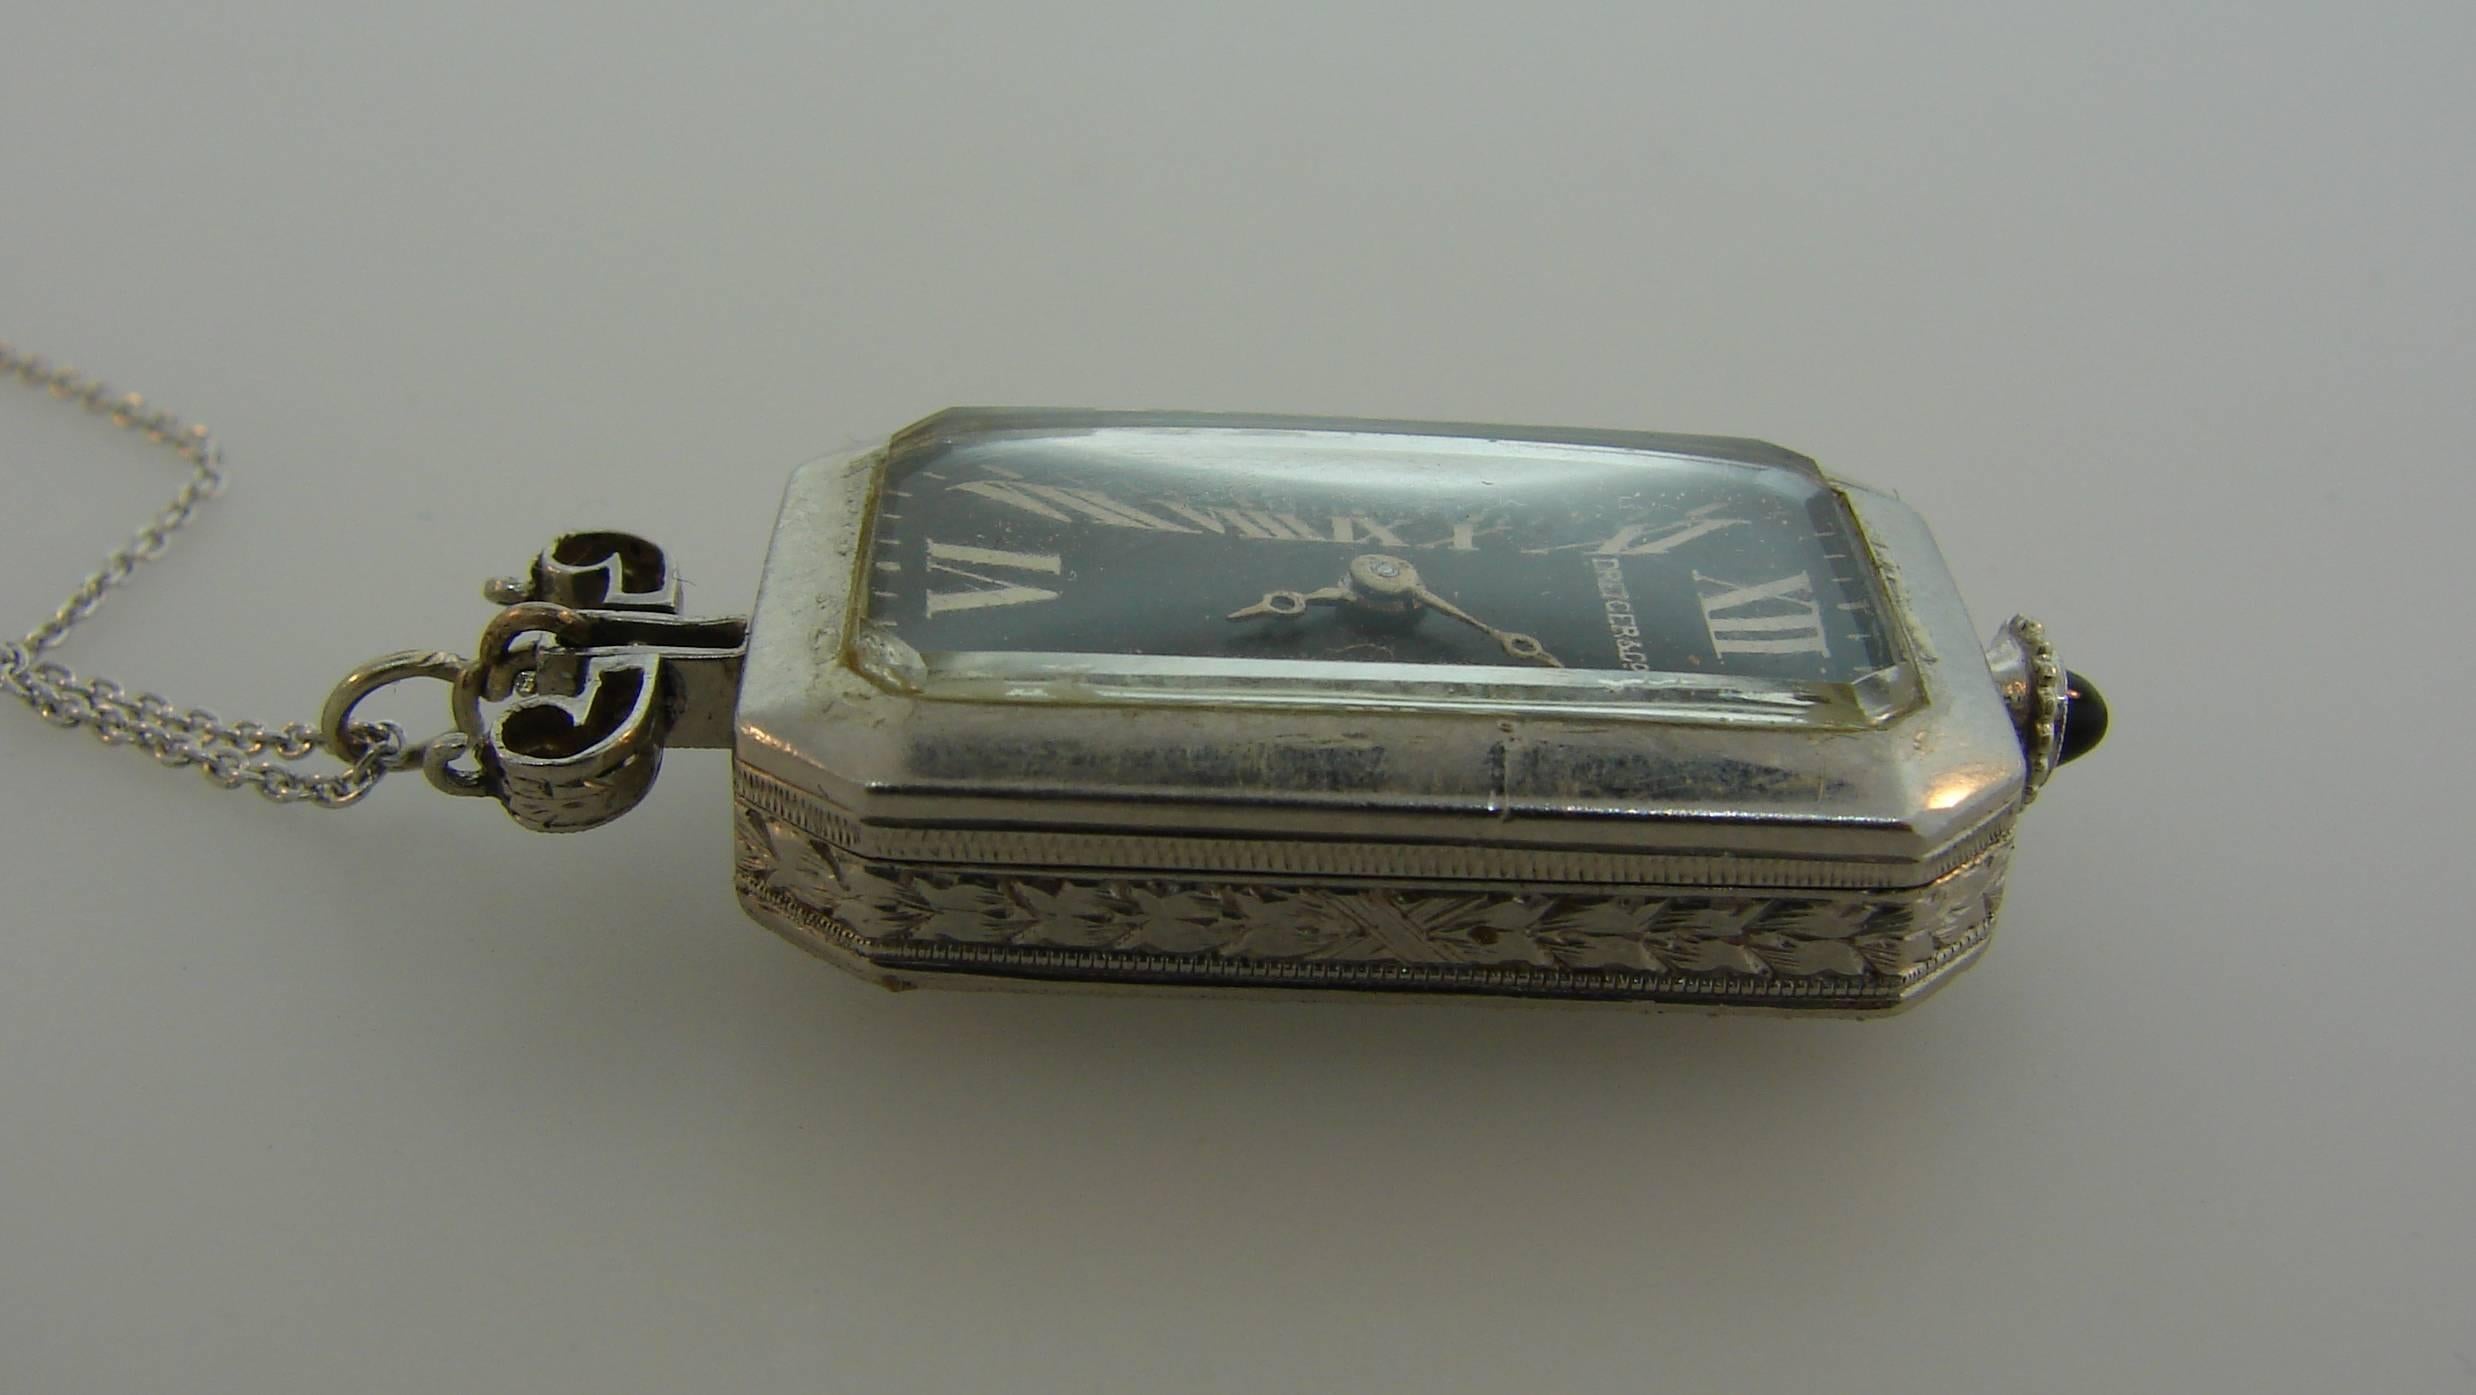 Women's Dreicer & Co. Lady's Platinum Diamond Onyx Pendant Watch Necklace